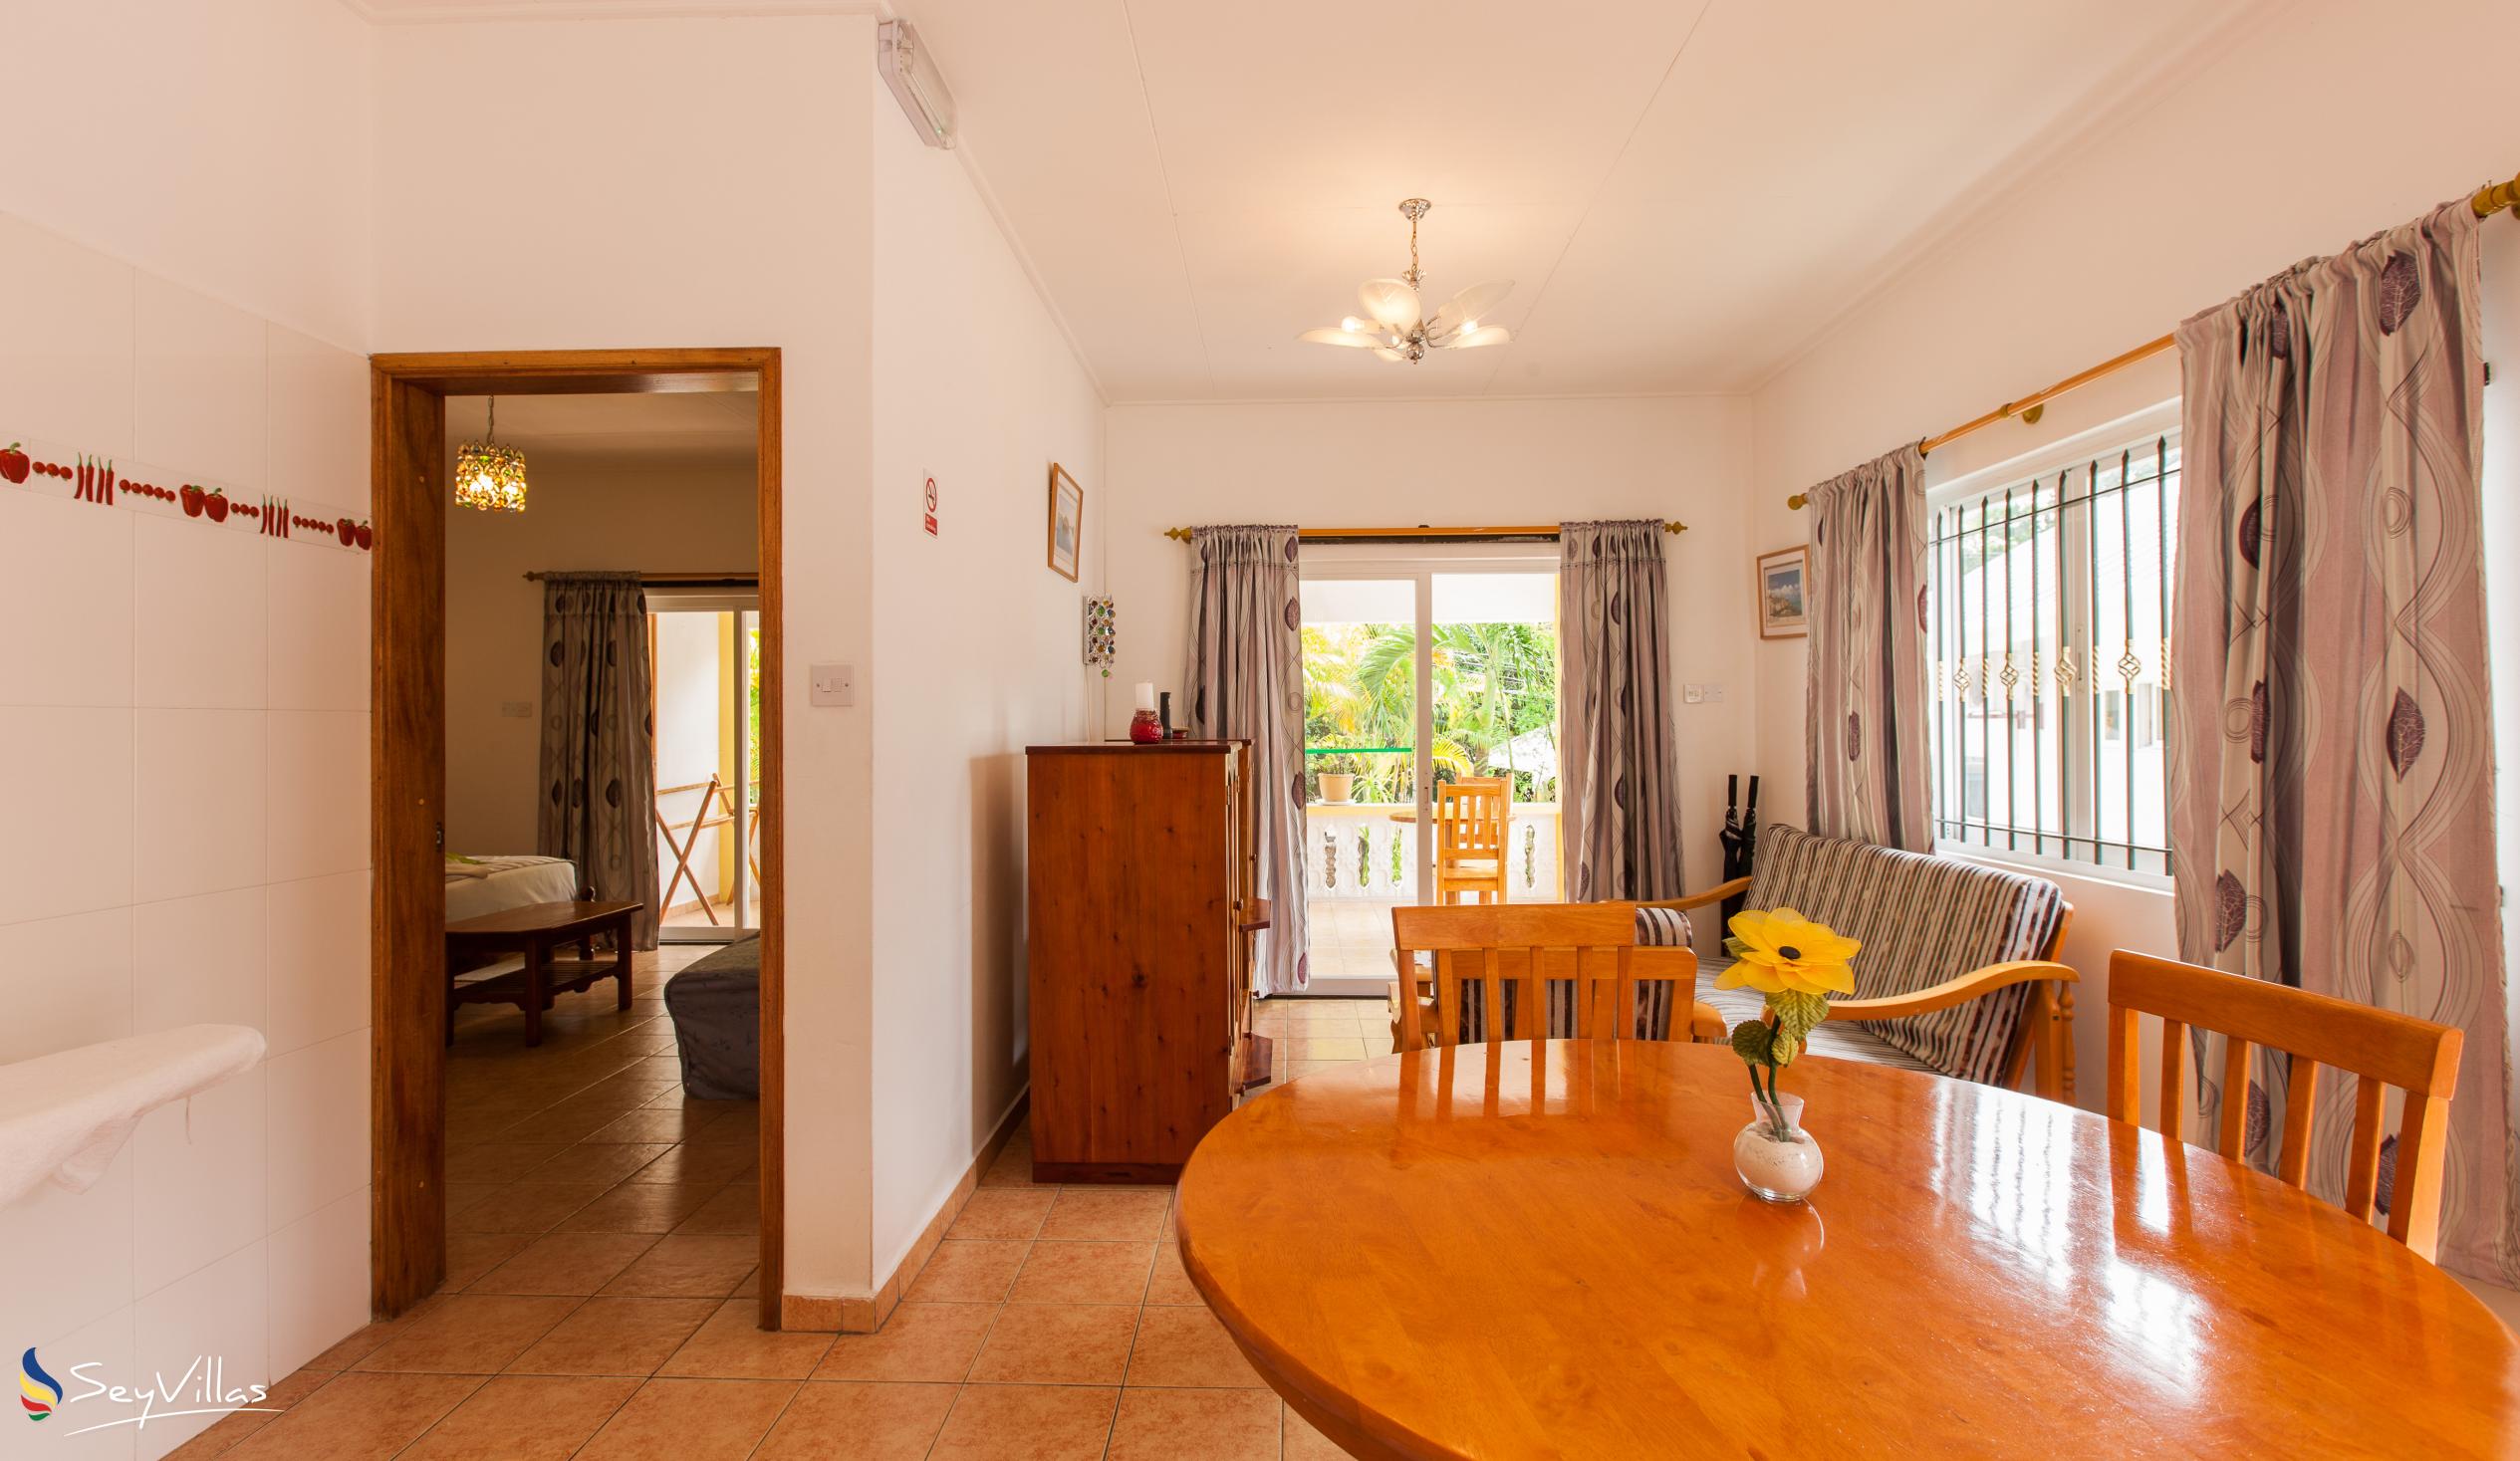 Foto 55: Acquario Villa - Appartement mit 1 Schlafzimmer - Praslin (Seychellen)